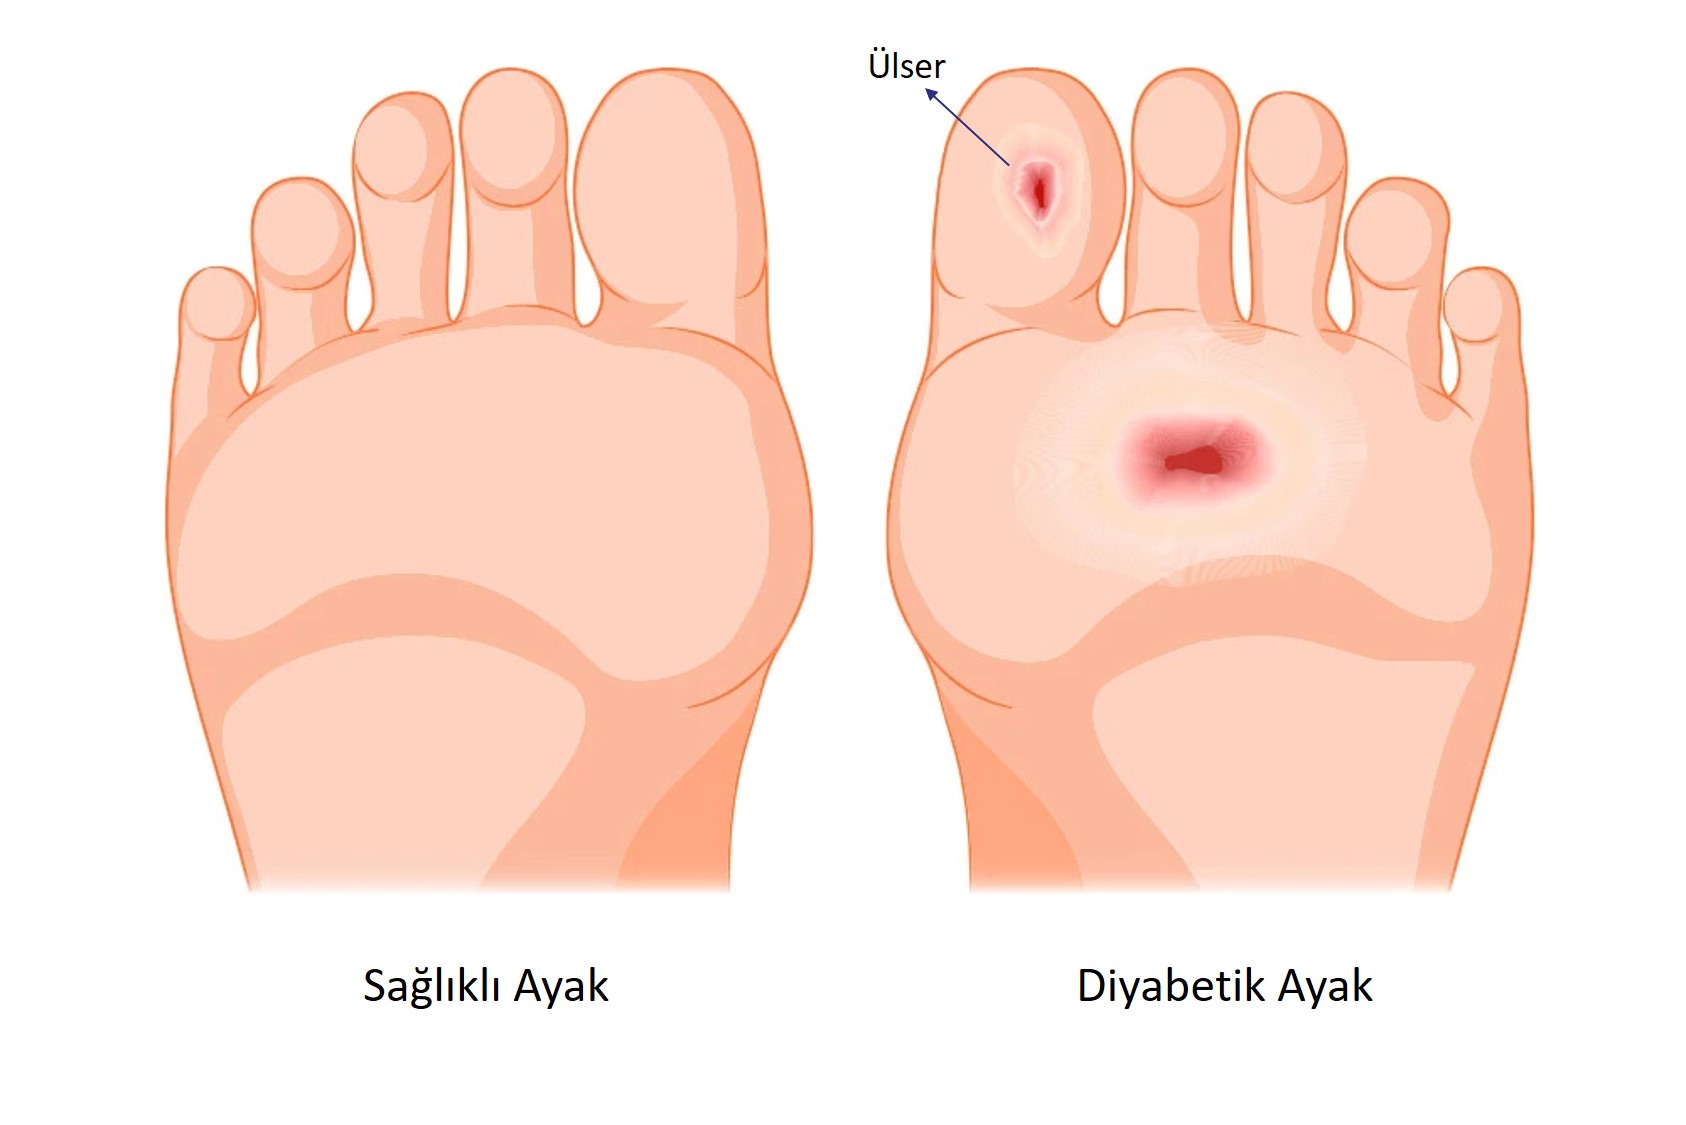 Cicatrices ulcerosas causadas por diabetes en pies